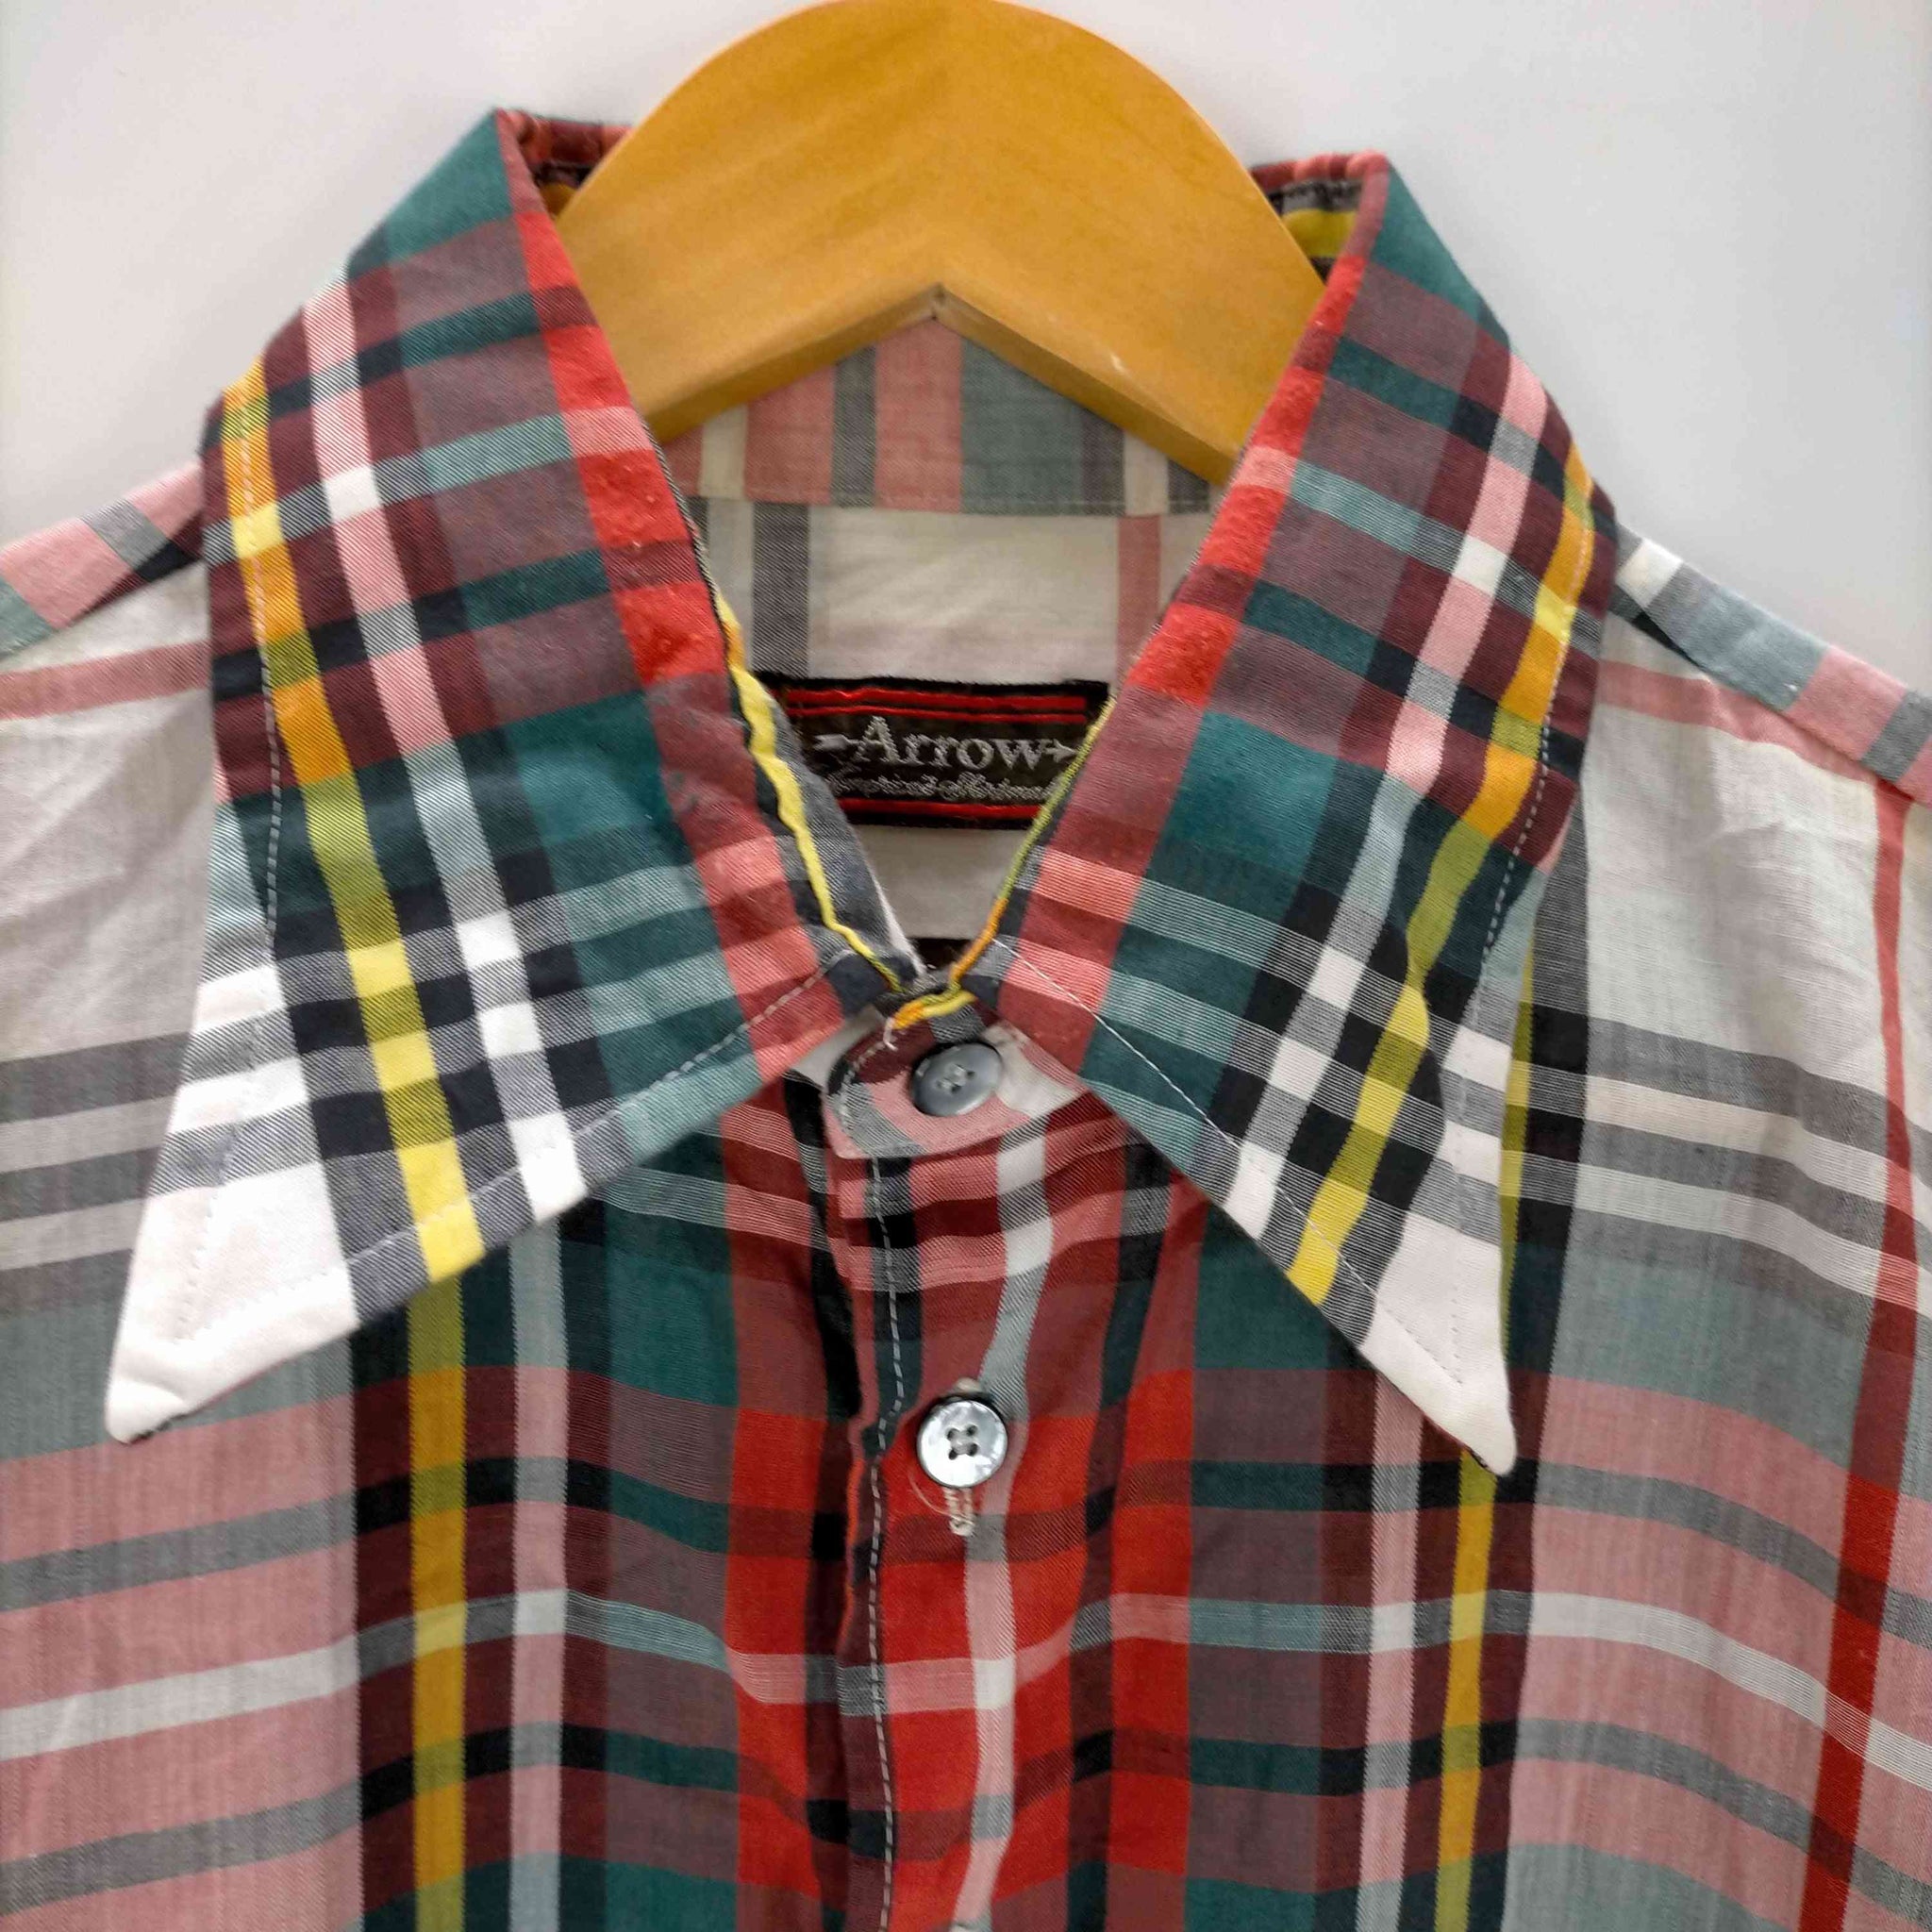 ARROW(アロー)70S マルチカラー チェックシャツ